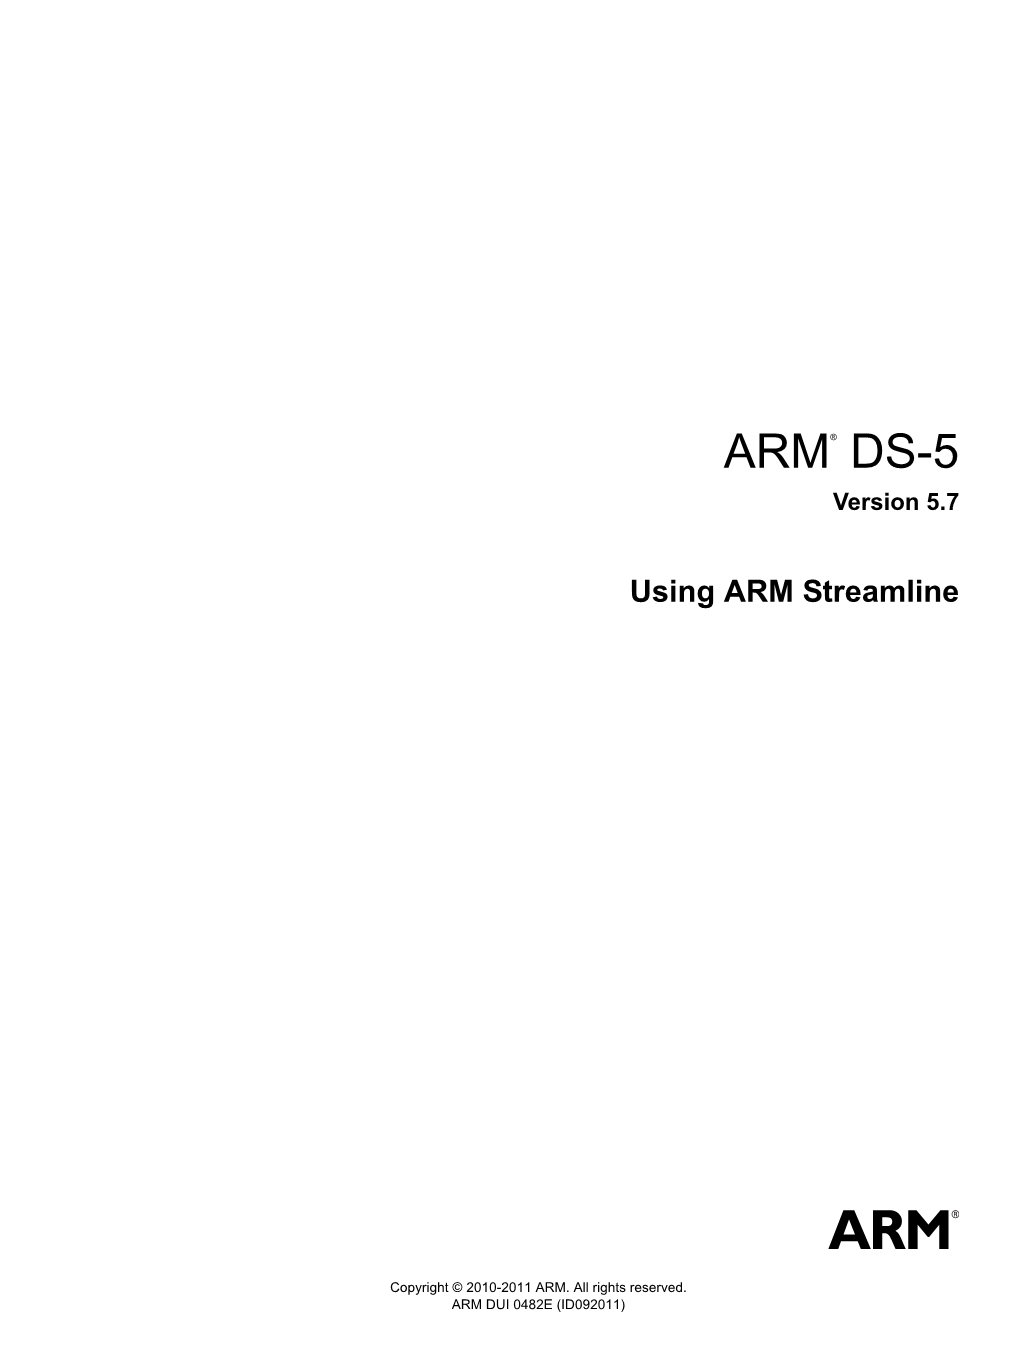 ARM DS-5 Using ARM Streamline